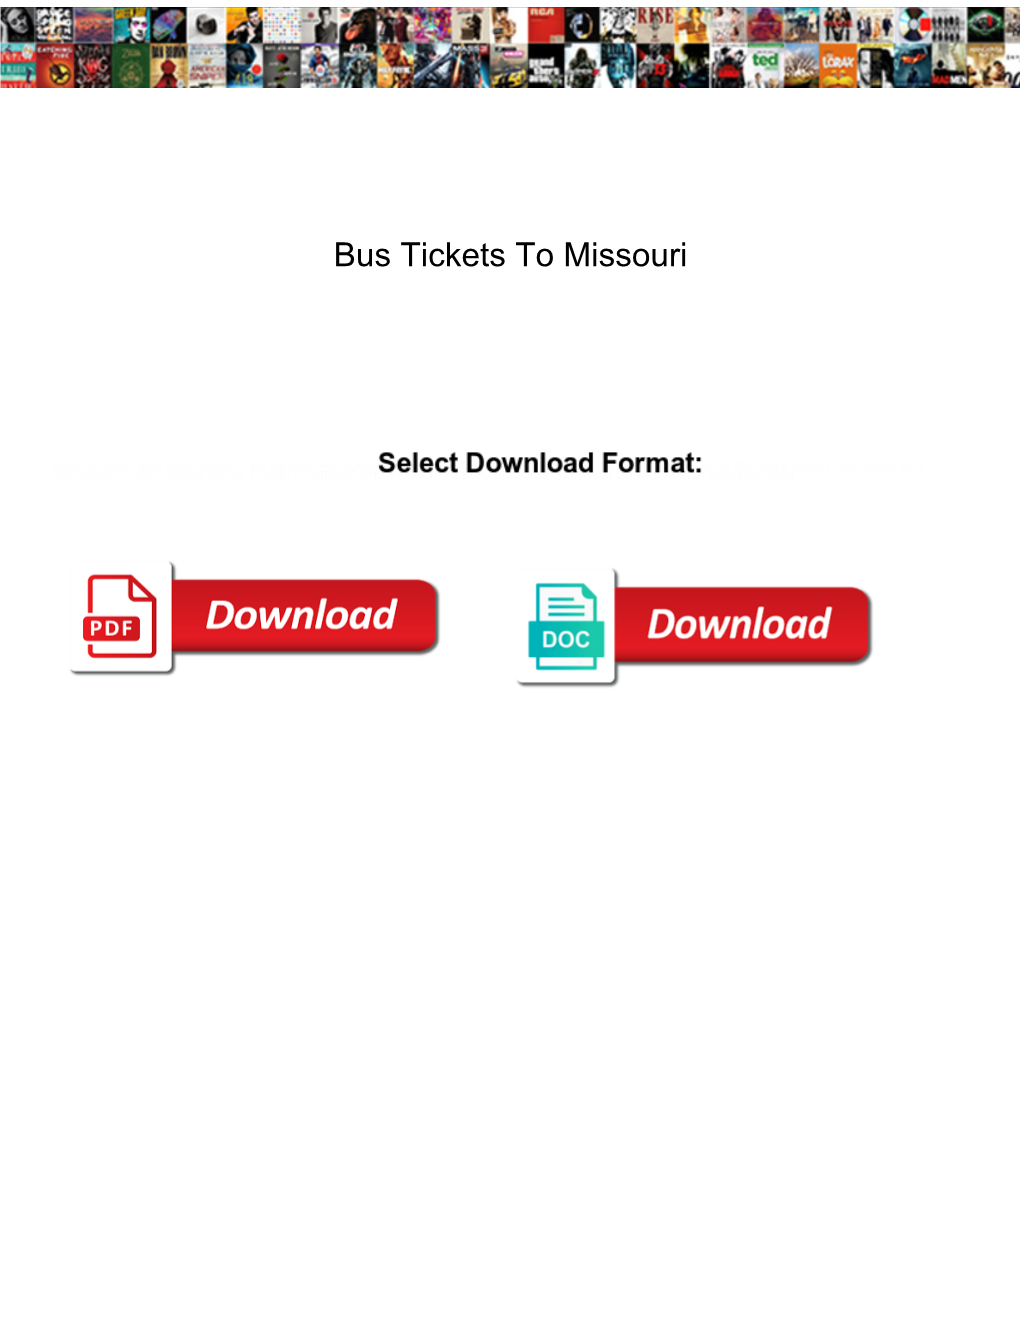 Bus Tickets to Missouri